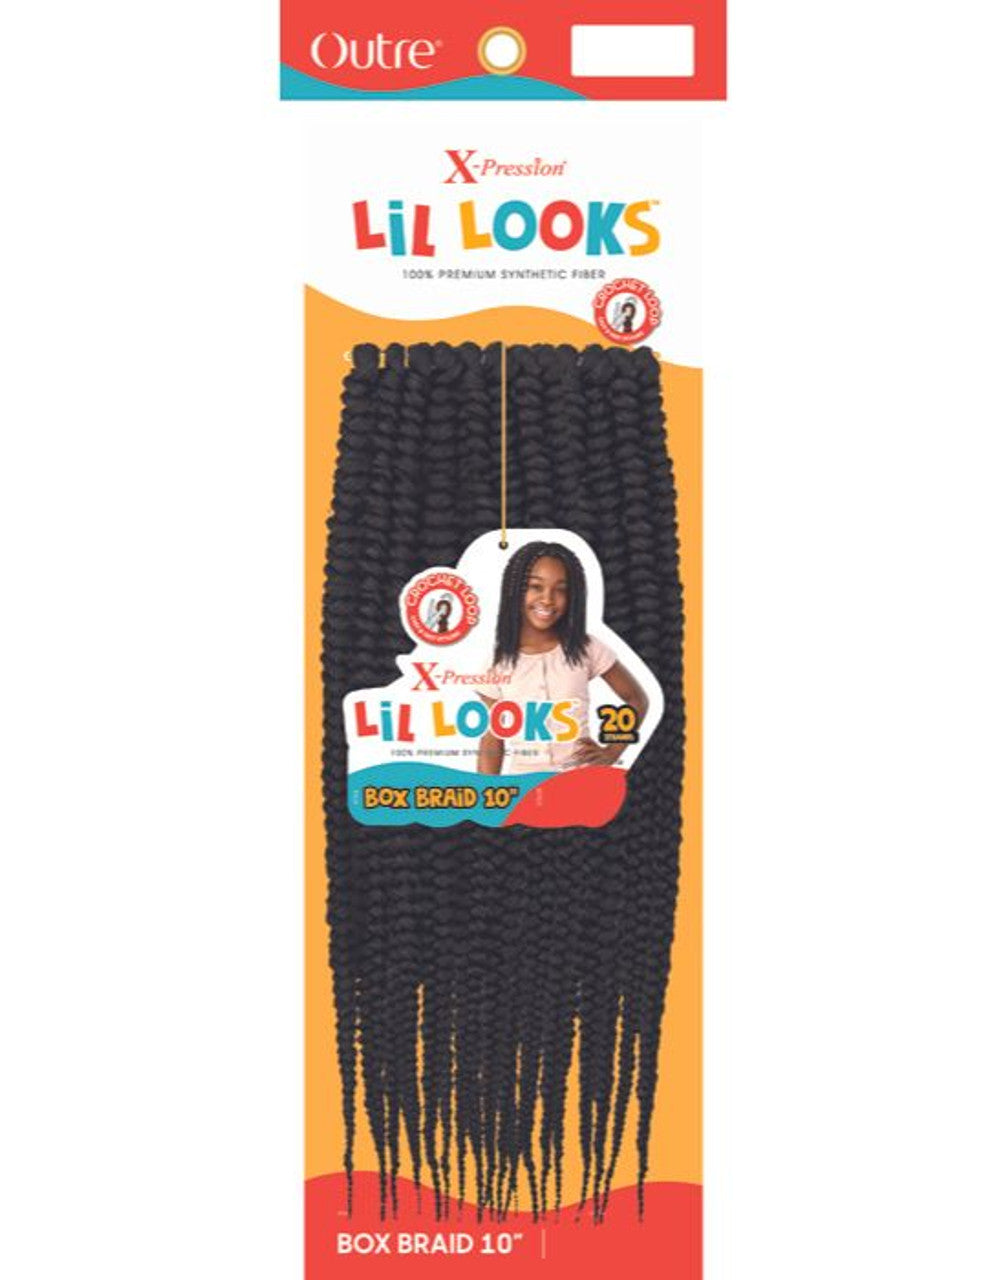 Lil-Looks Box braid 10"